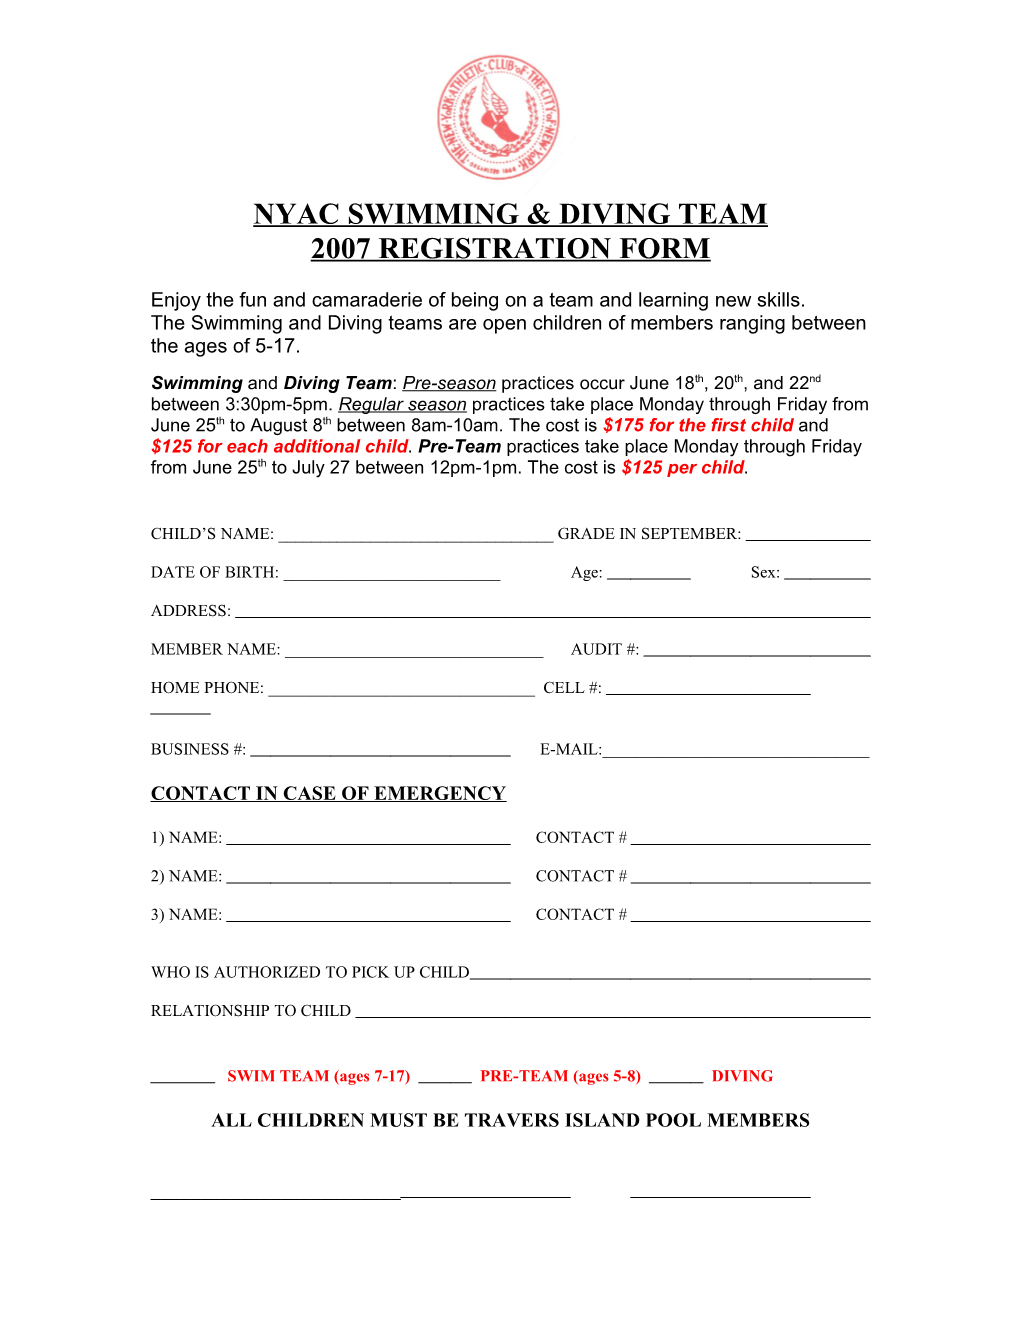 Nyac Swimming & Diving Team